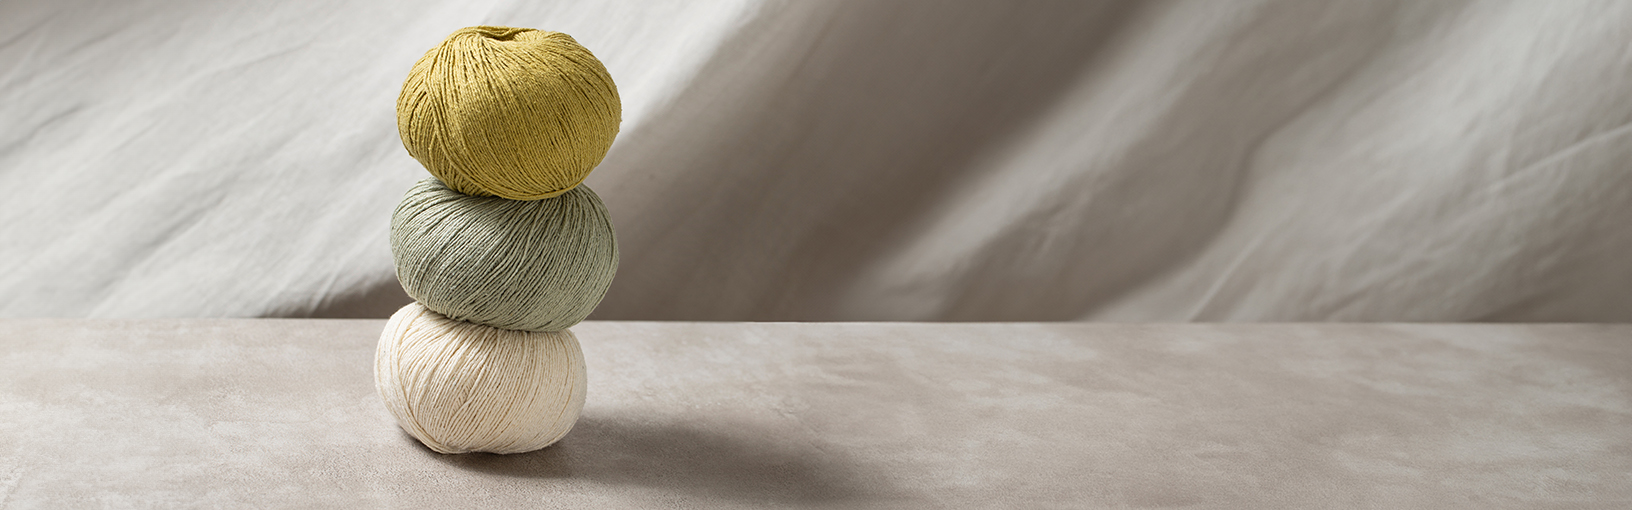 Visokokvalitetne pređe za pletenje, kukičanje i filc Lana Grossa Vune | Hand-dyed